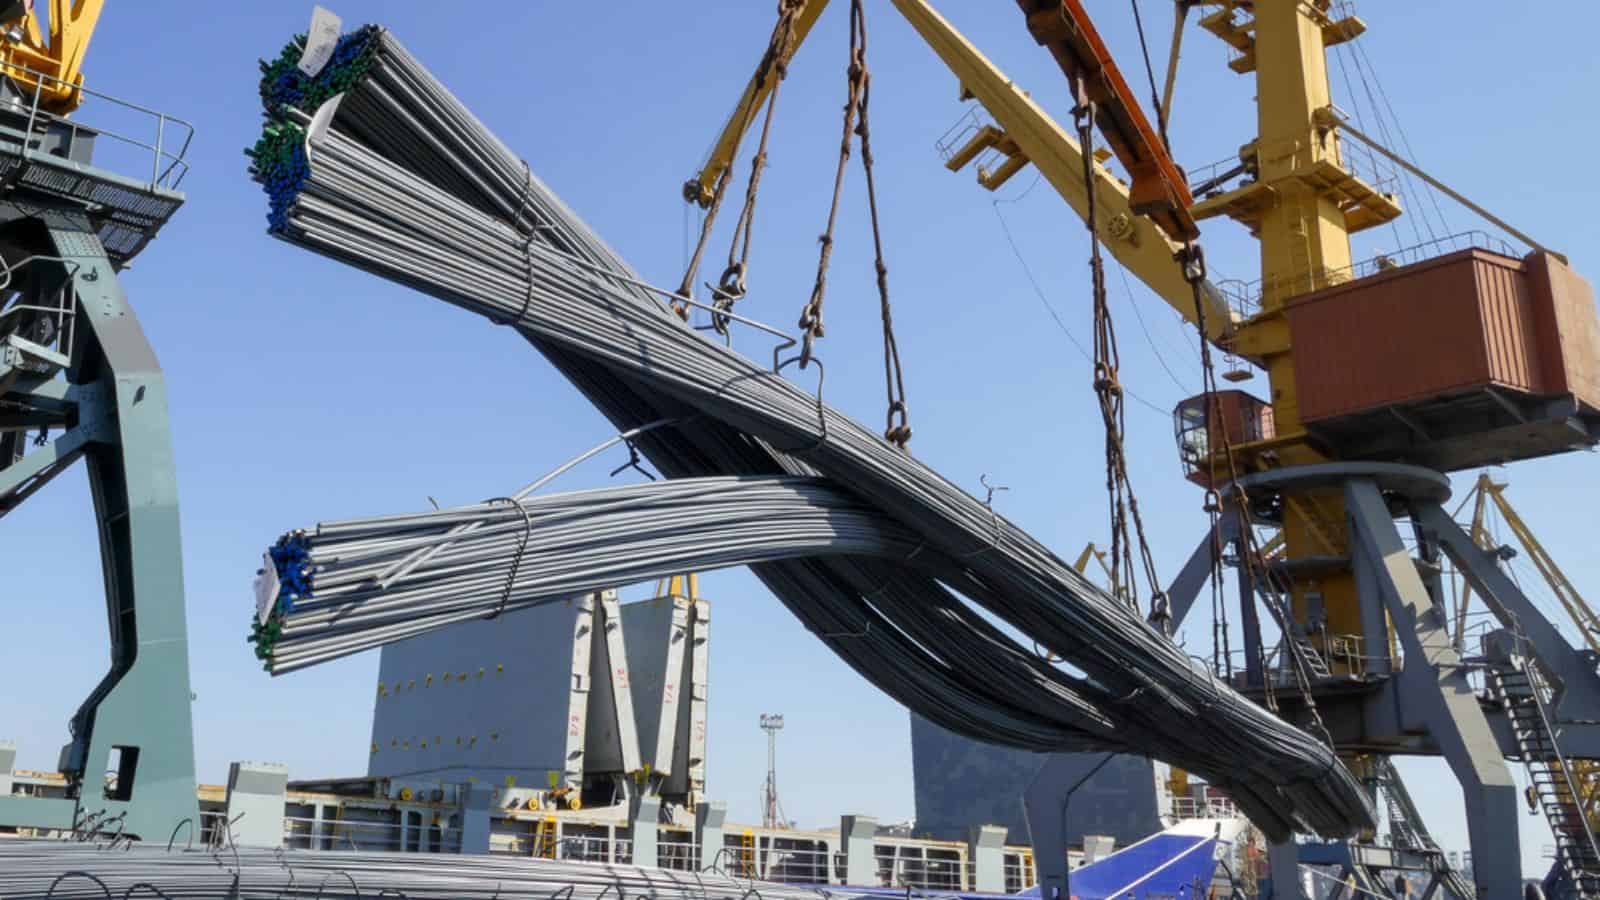 Port crane loads building reinforcement onto a ship